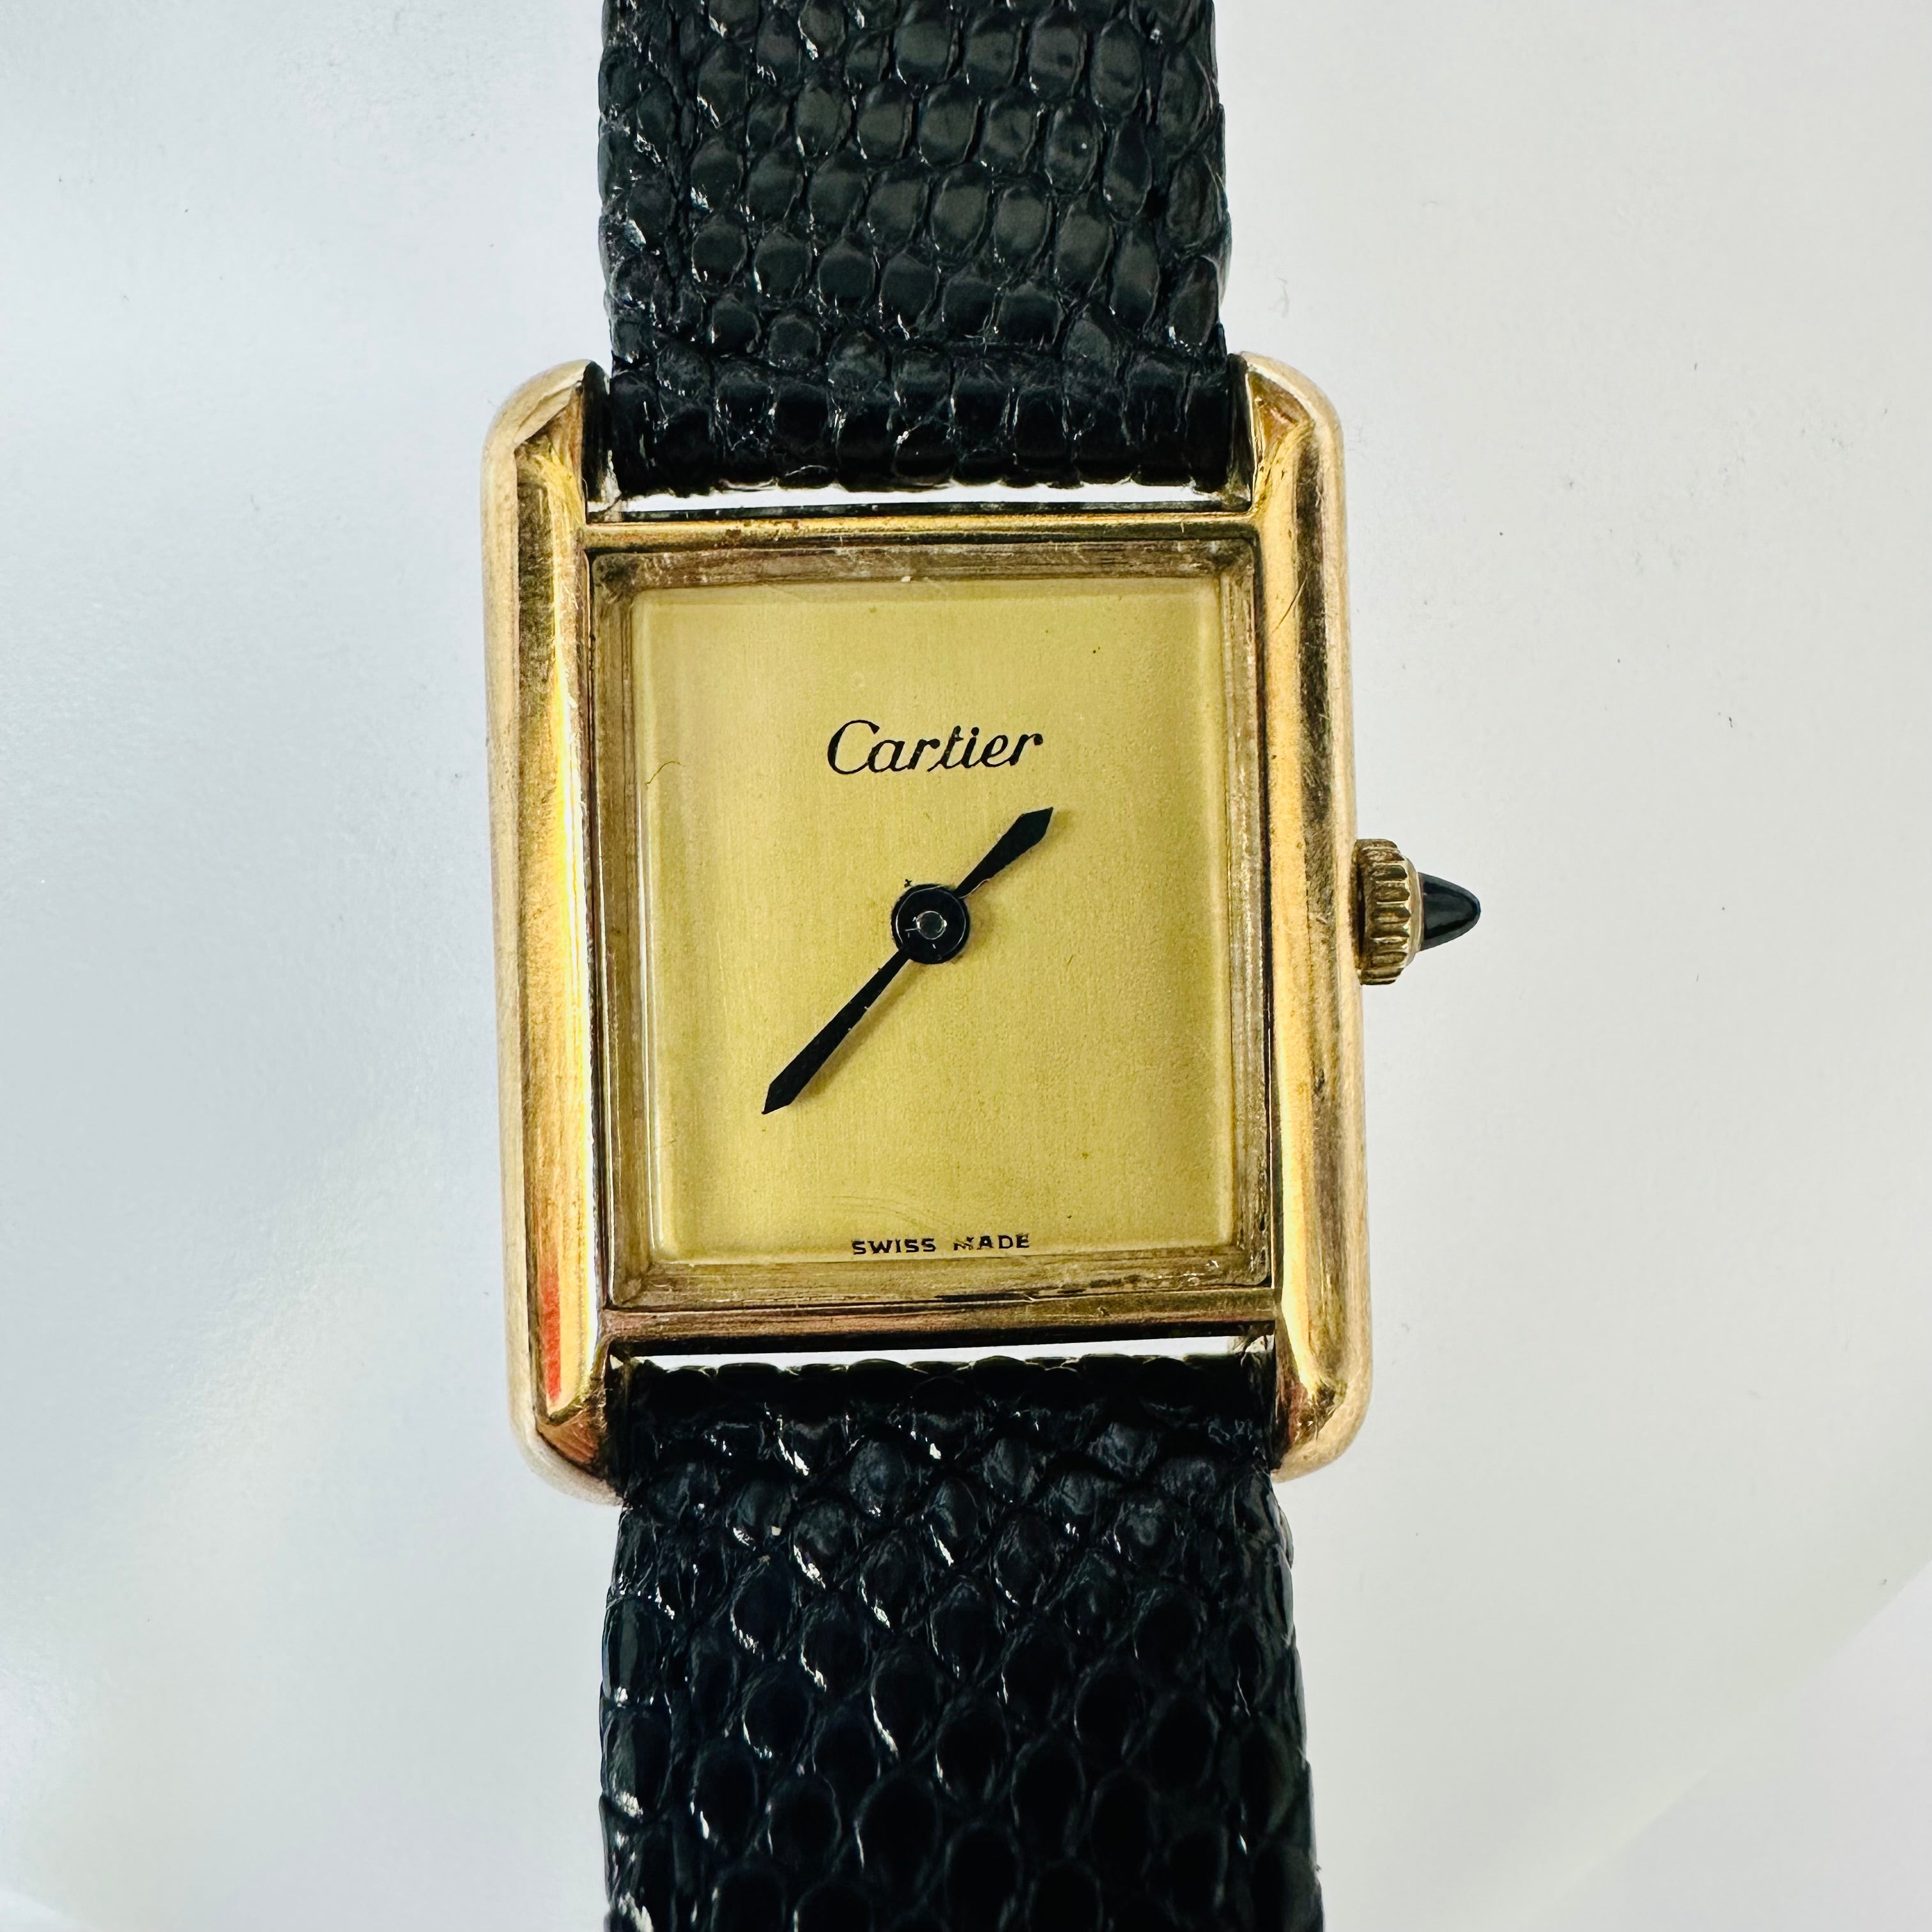 Must de Cartier Golden Face and Strap Tank Watch